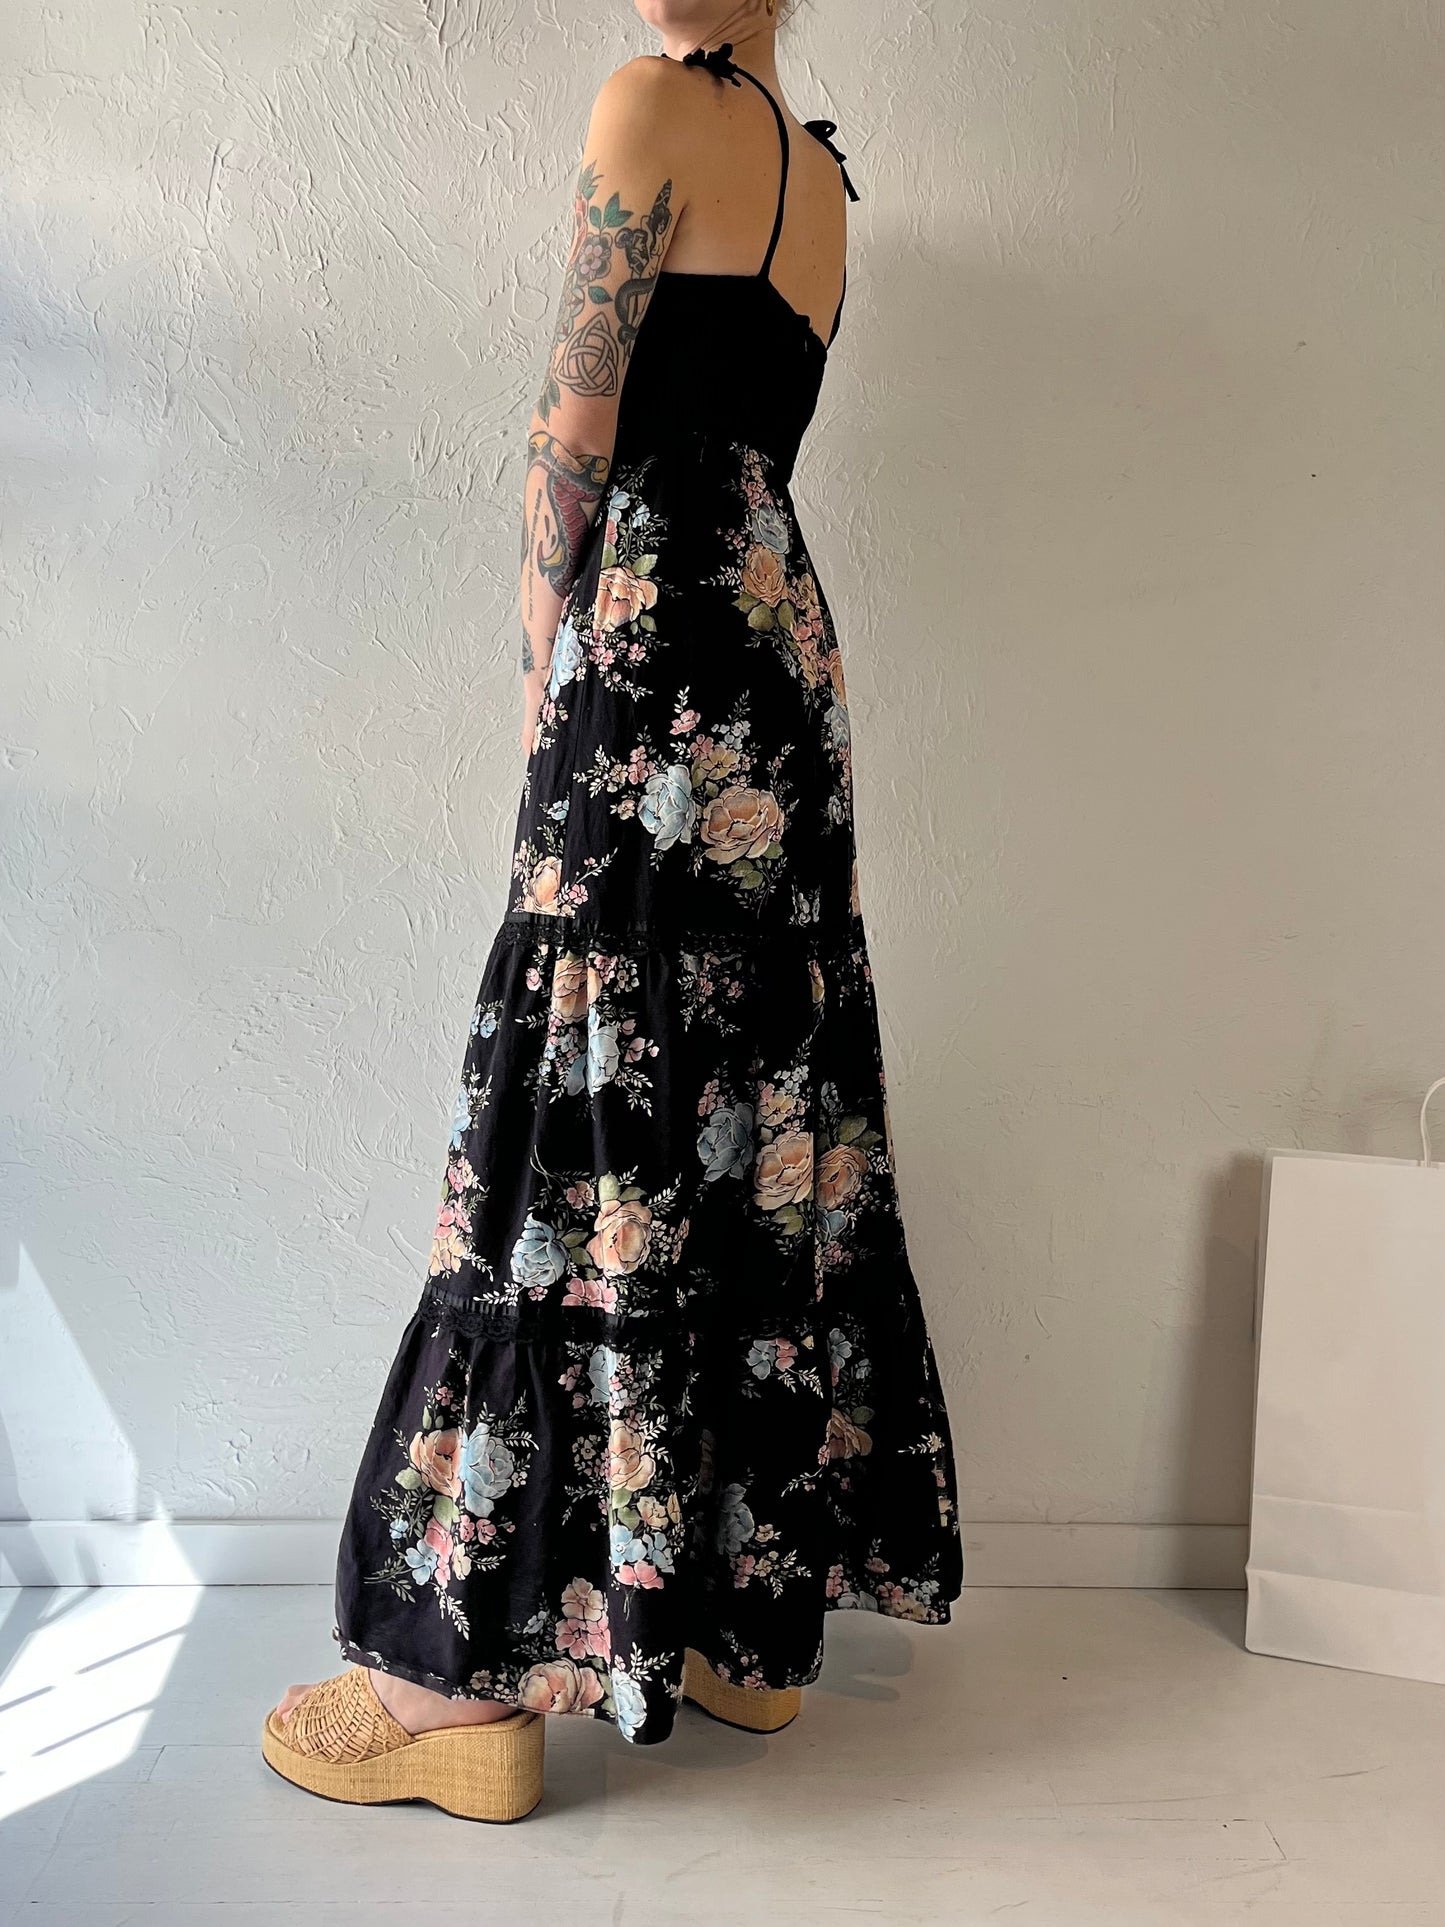 70s 'Candi Jones' Black Floral Print Dress / Small